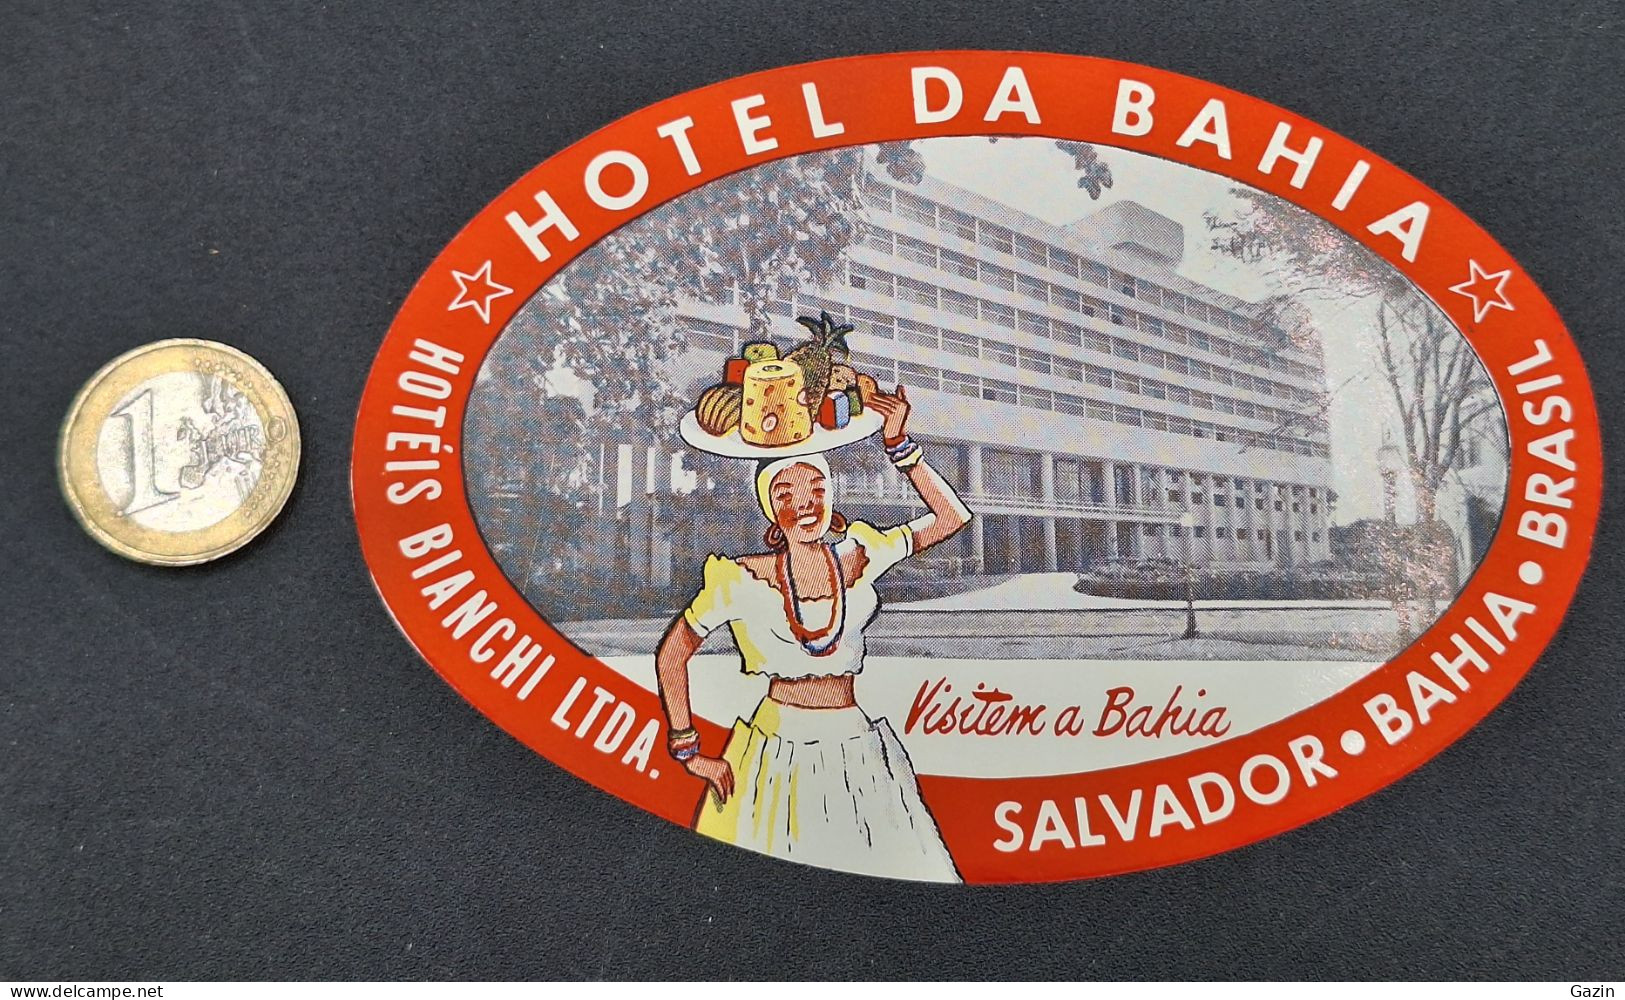 C7/3 -  Hotel Da Bahia * Hotéis Bianchi Ltda * Brasil * Luggage Lable * Rótulo * Etiqueta - Hotel Labels